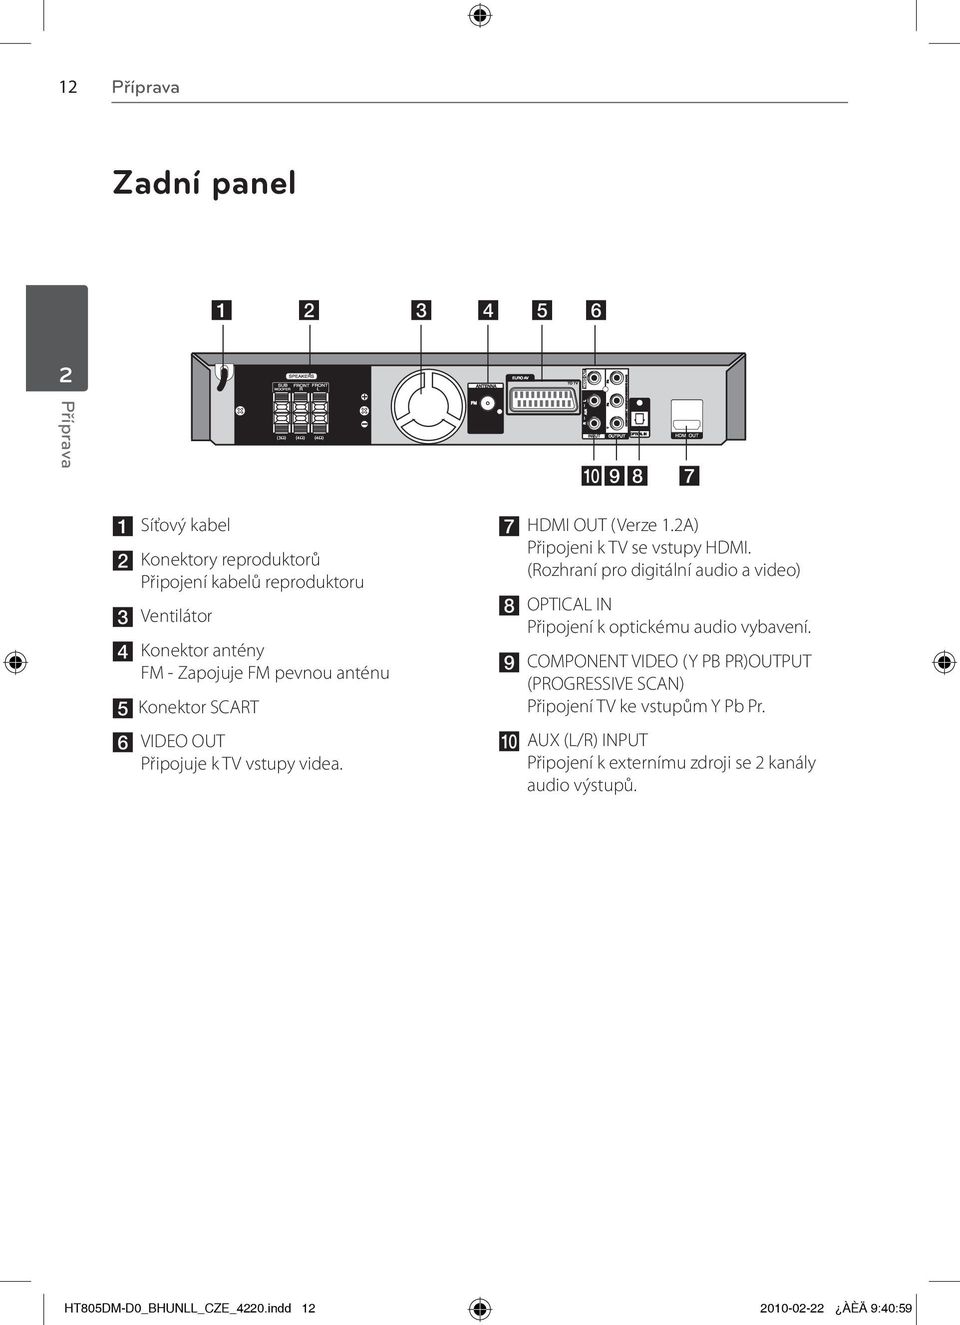 (Rozhraní pro digitální audio a video) h OPTICAL IN Připojení k optickému audio vybavení.